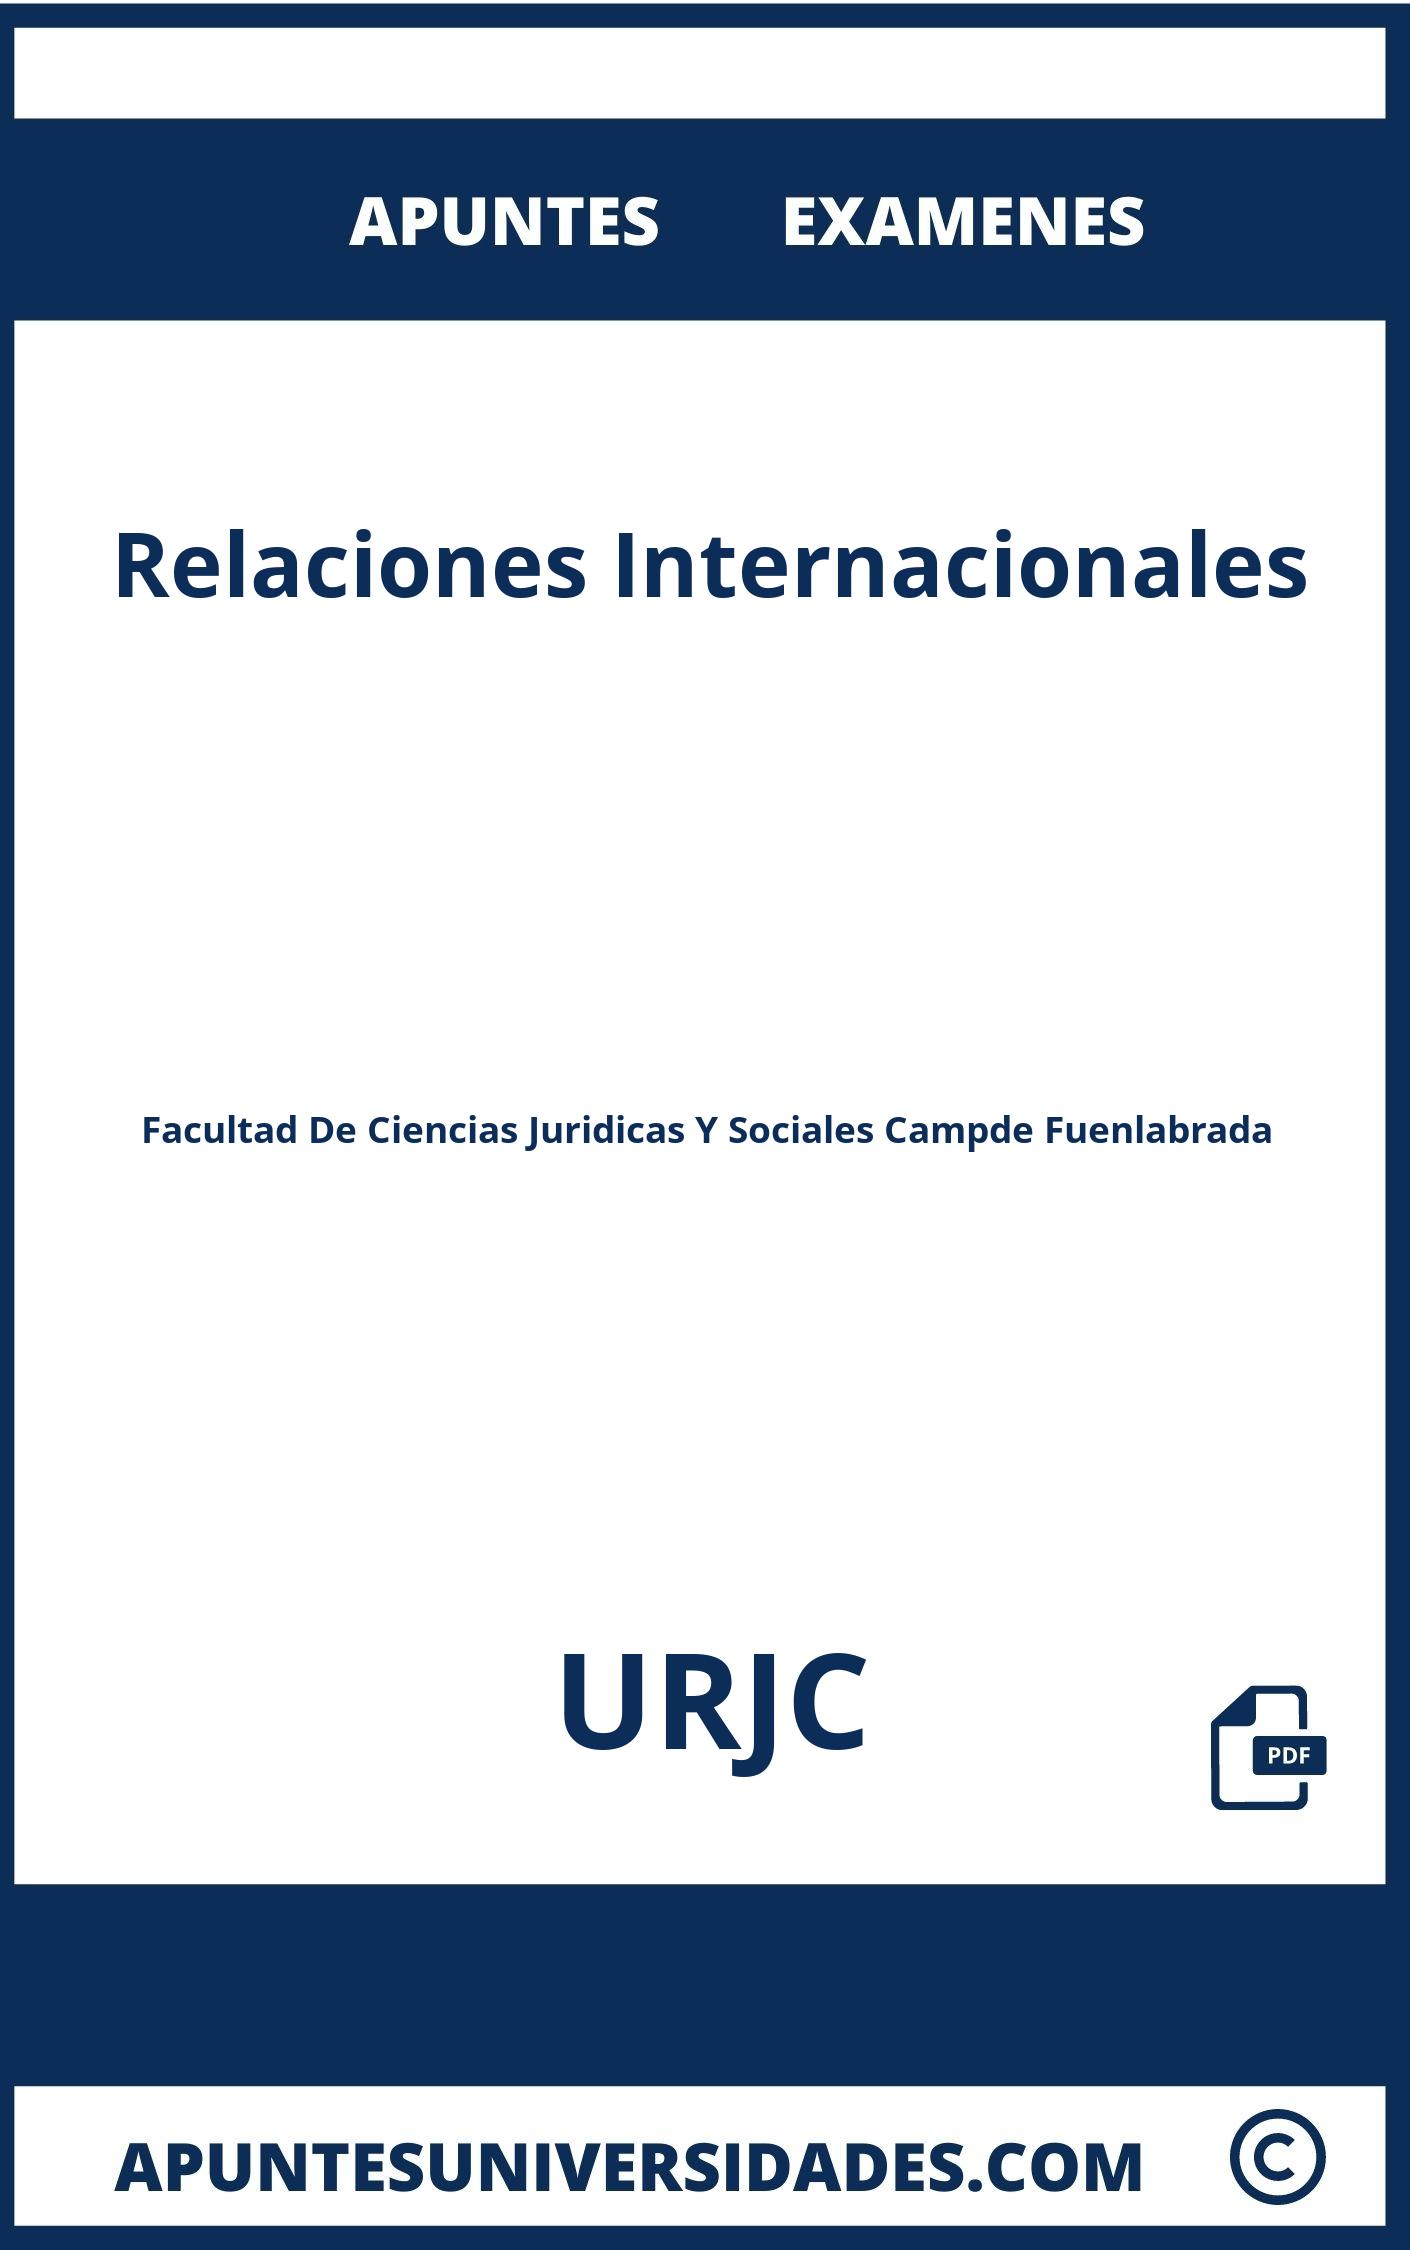 Apuntes Examenes Relaciones Internacionales URJC